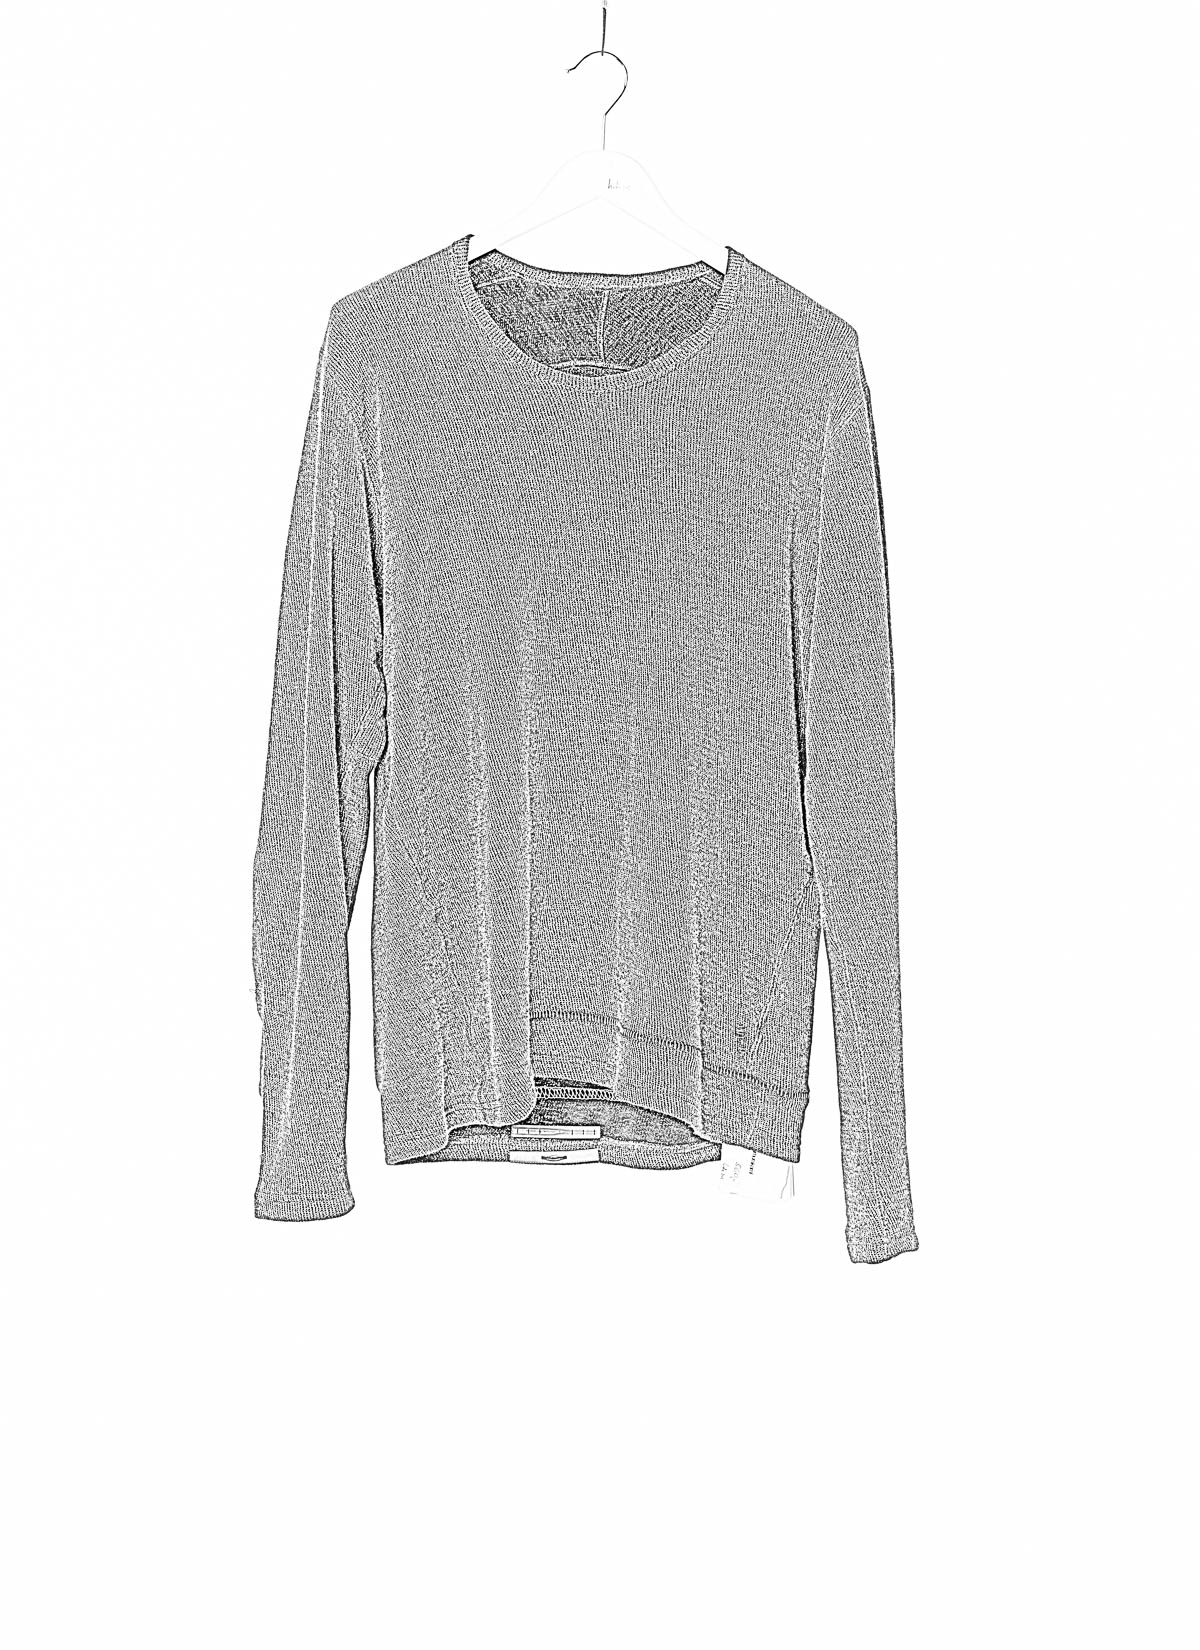 hide-m | TAICHI MURAKAMI Sweater T-shirt U LS, cashmere paper cotton